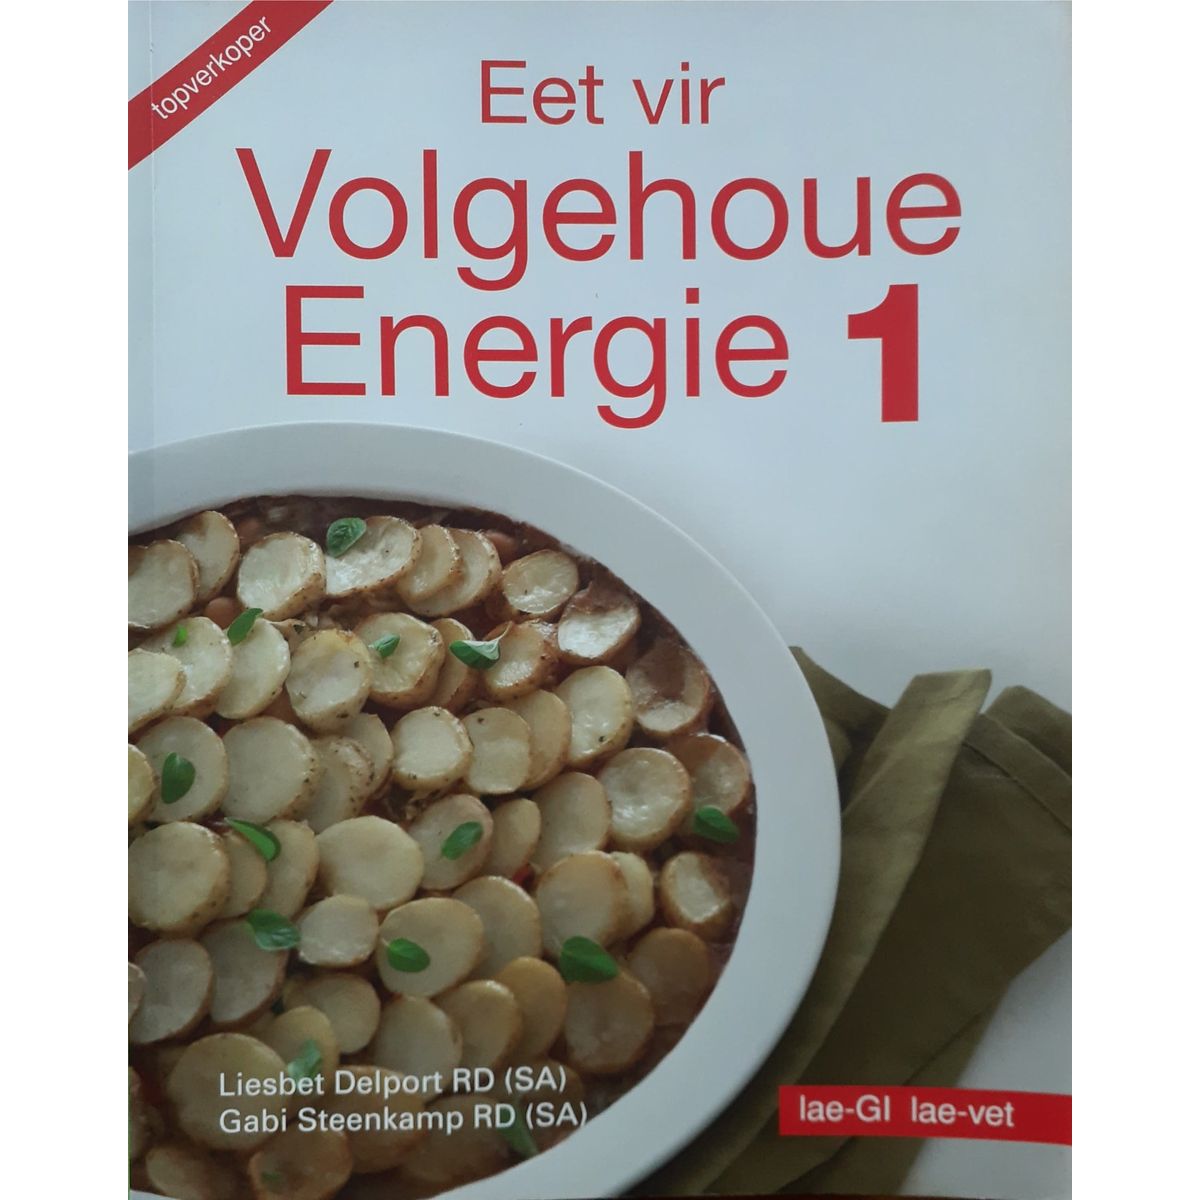 ISBN: 9780624044352 / 0624044351 - Eet vir Volgehoue Energie 1 by Gabi Steenkamp & Liesbet Delport [2006]